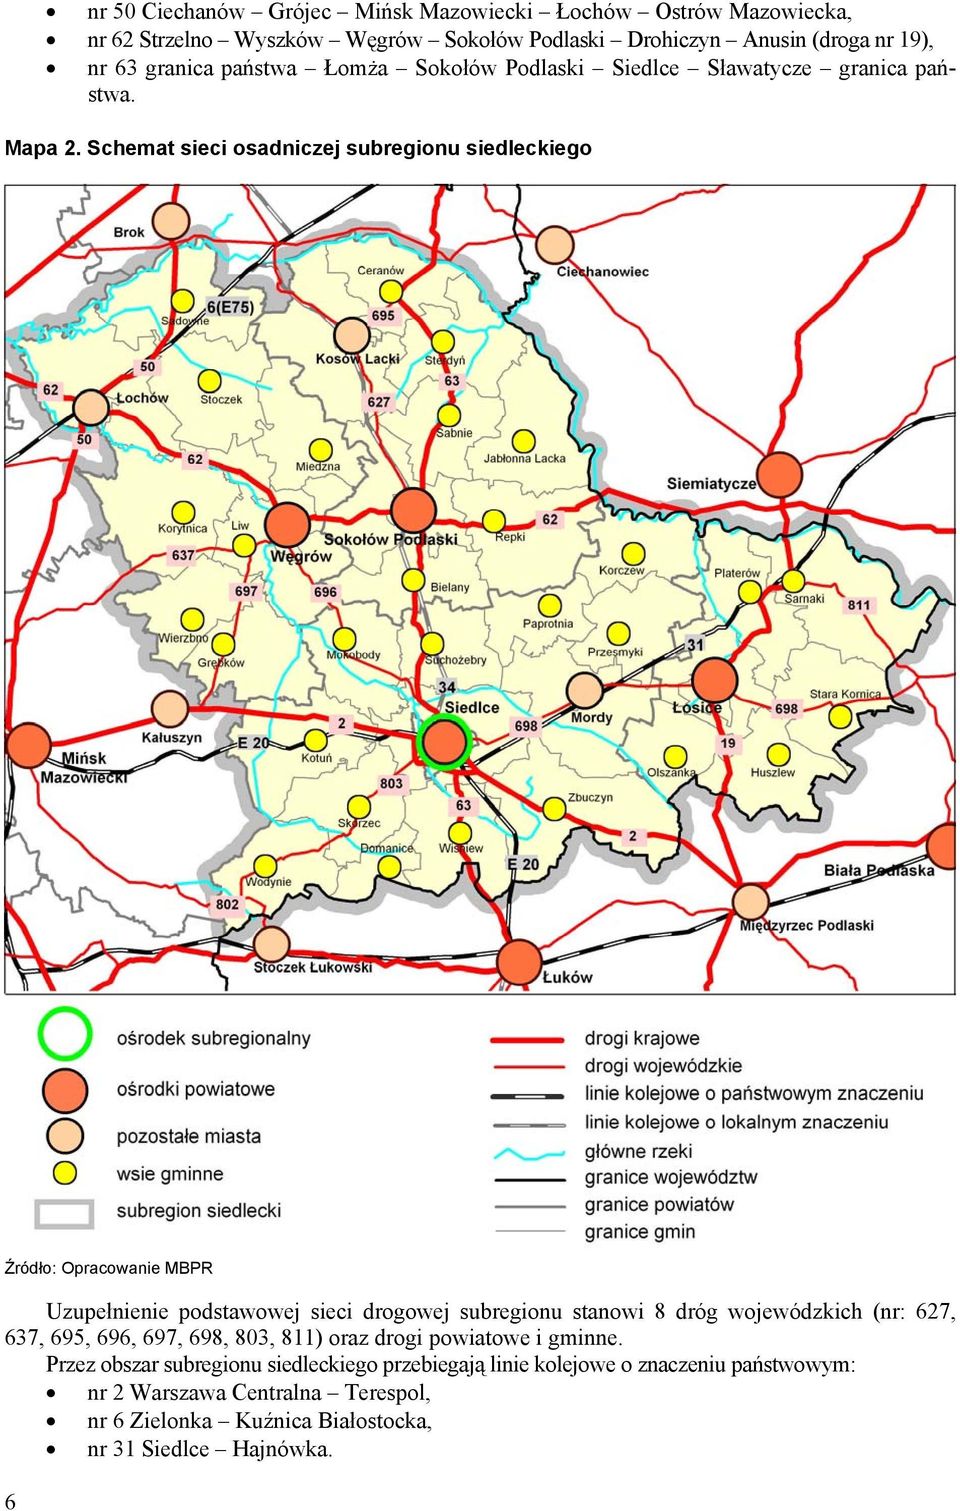 Schemat sieci osadniczej subregionu siedleckiego Źródło: Opracowanie MBPR Uzupełnienie podstawowej sieci drogowej subregionu stanowi 8 dróg wojewódzkich (nr: